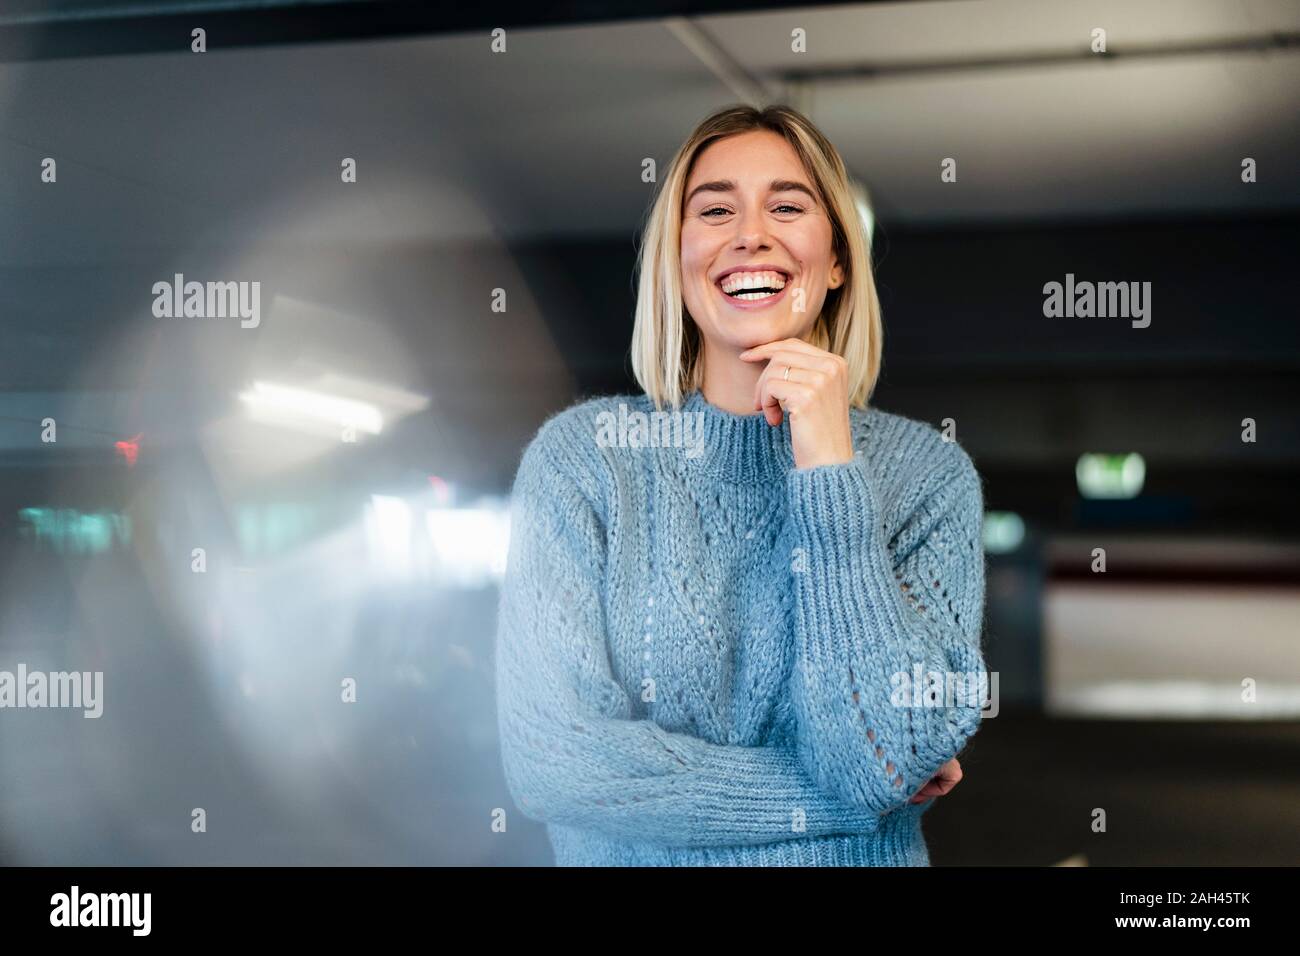 Retrato de una joven mujer riendo en un garaje Foto de stock